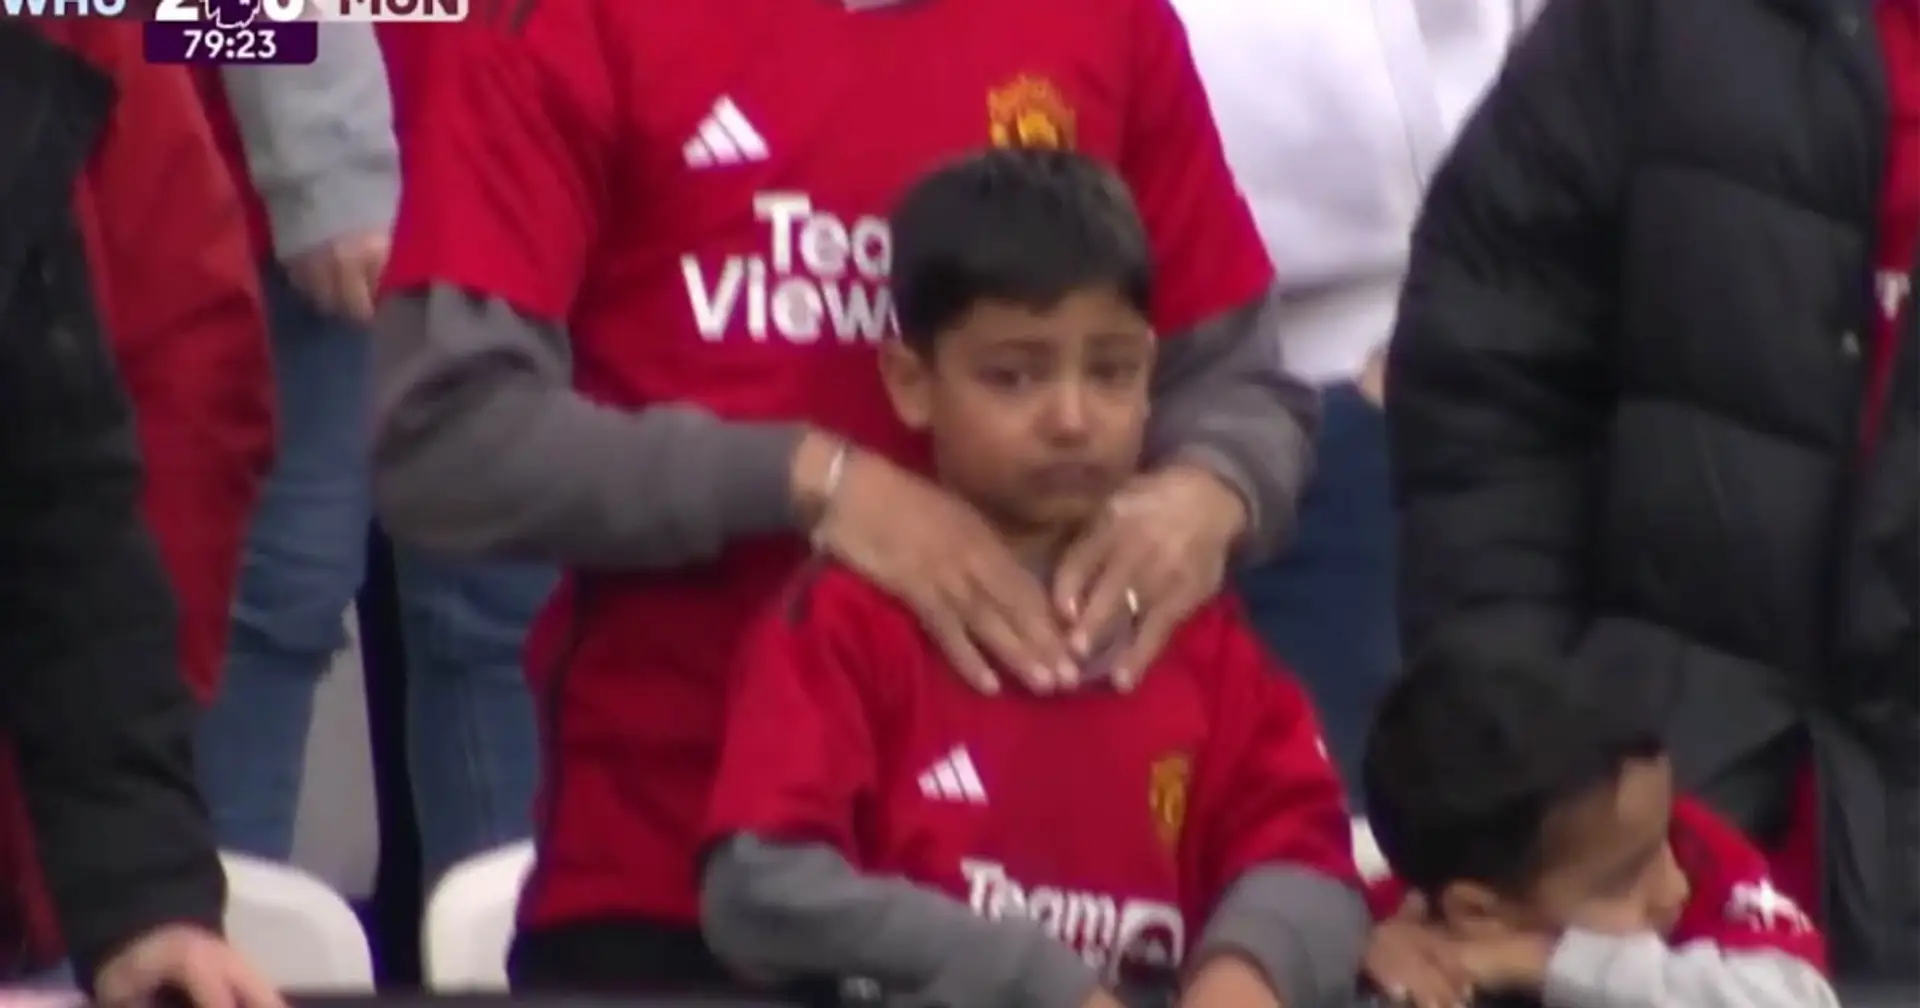 Filmé : Man United fait pleurer un enfant avant Noël